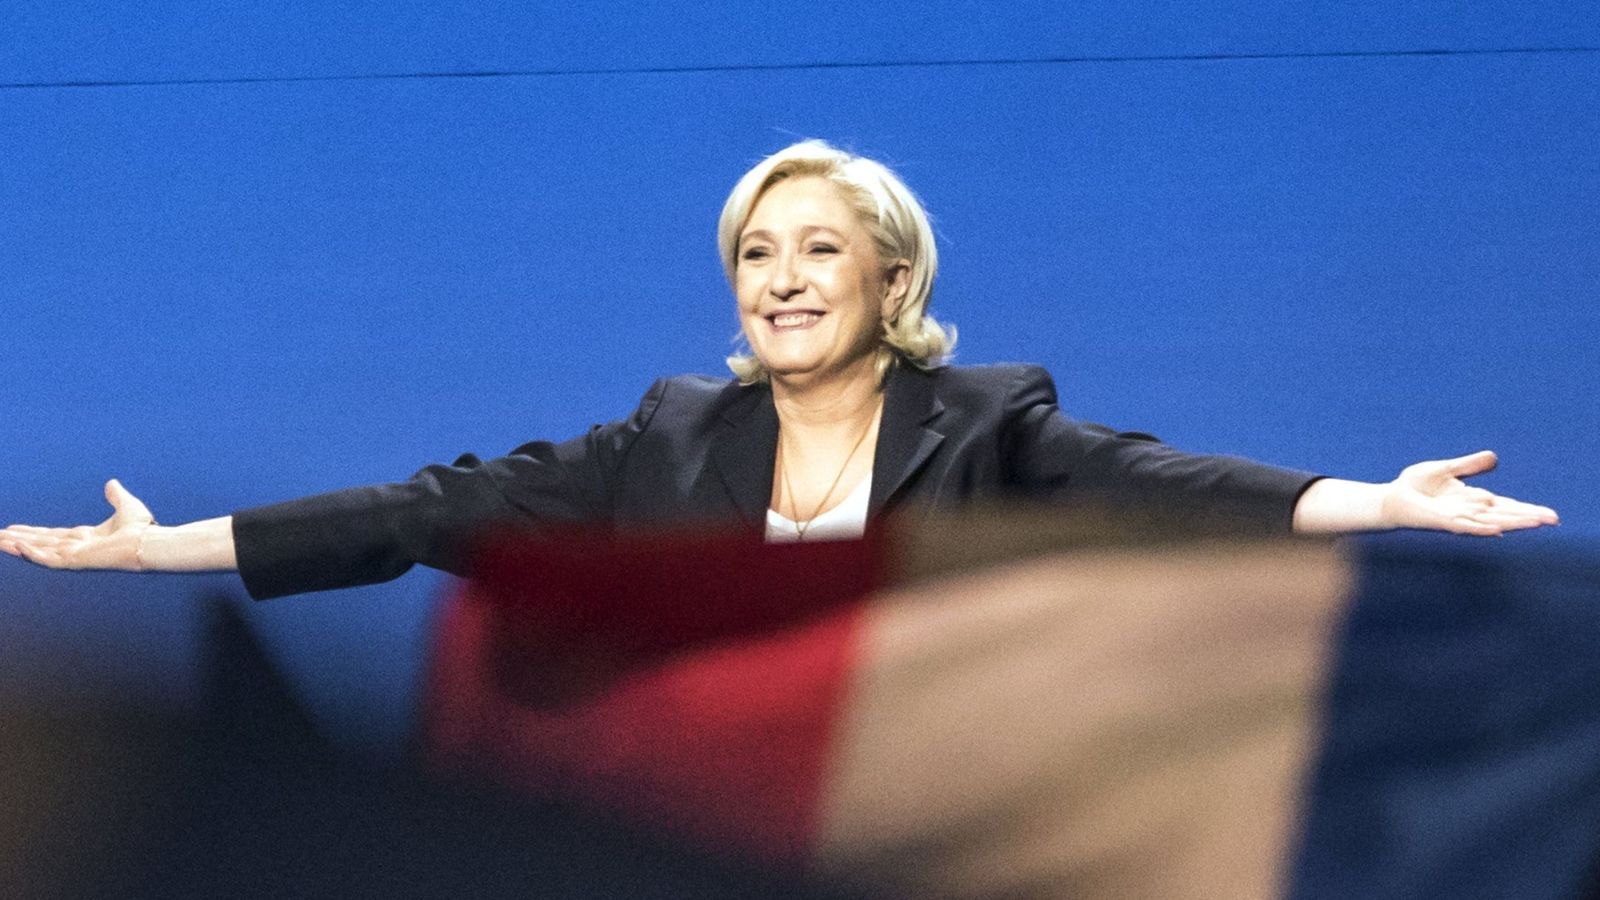 Foto: La líder del Frente Nacional (FN), Marine Le Pen, ofrece un discurso durante un mitin en Villepinte en el norte de París (Francia).